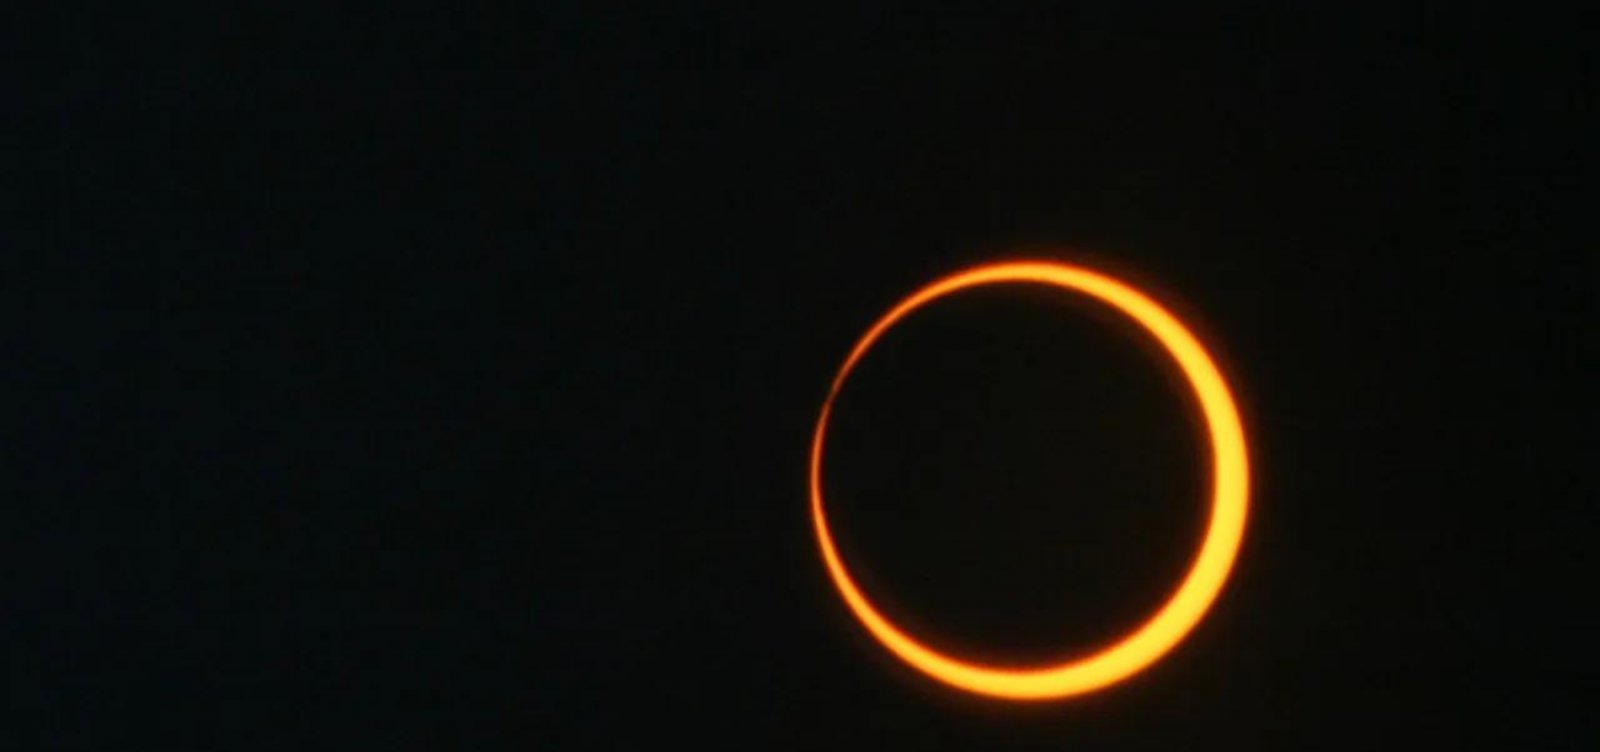 Eclipse solar anular poderá ser observado em Salvador; saiba mais